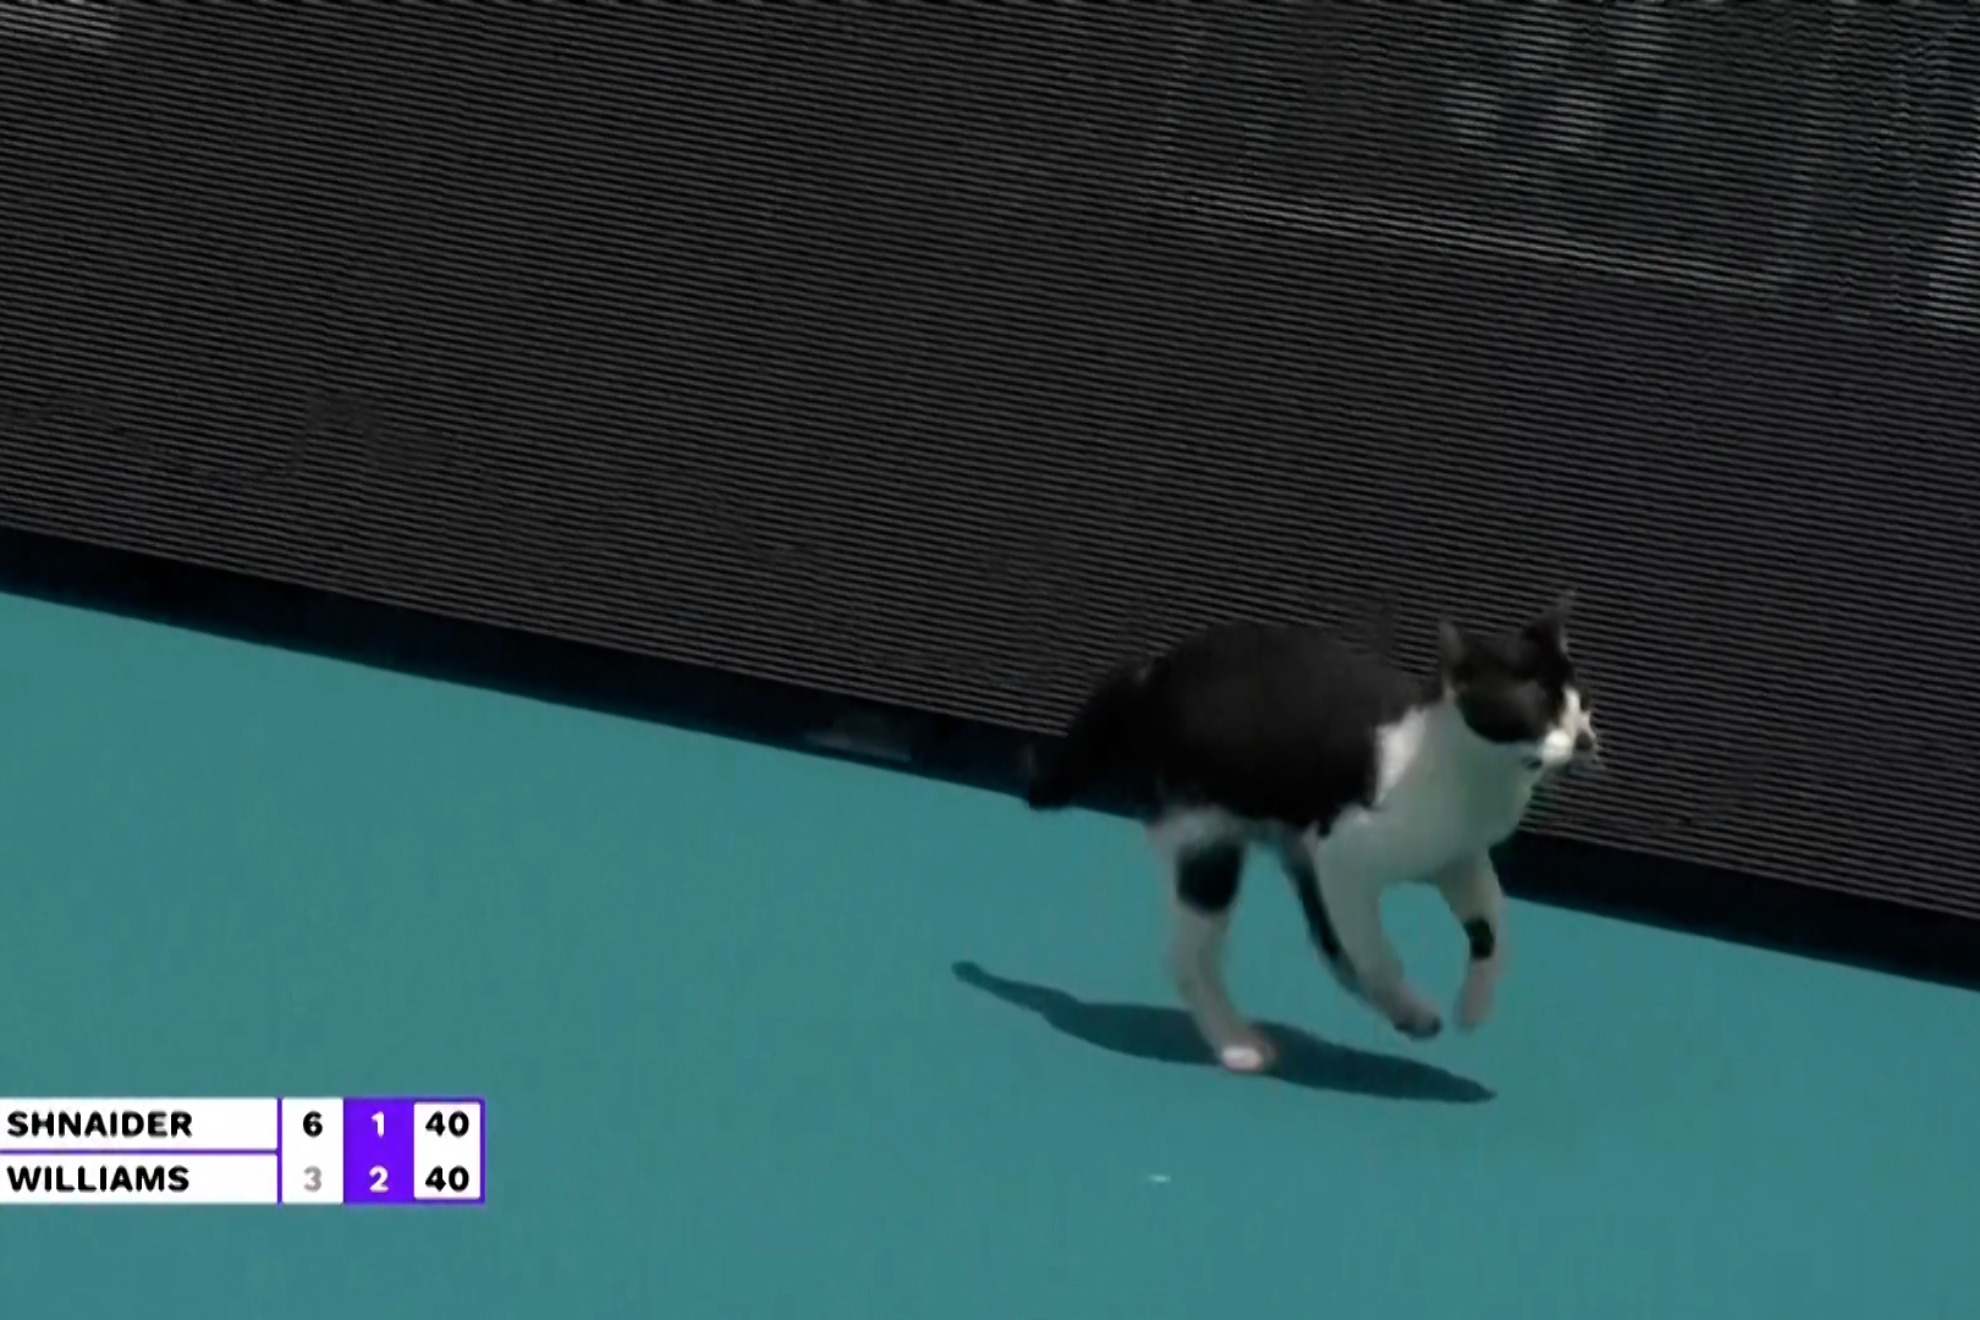 Un gato se cuela en la pista con Venus Williams y... El rbitro detiene el juego!